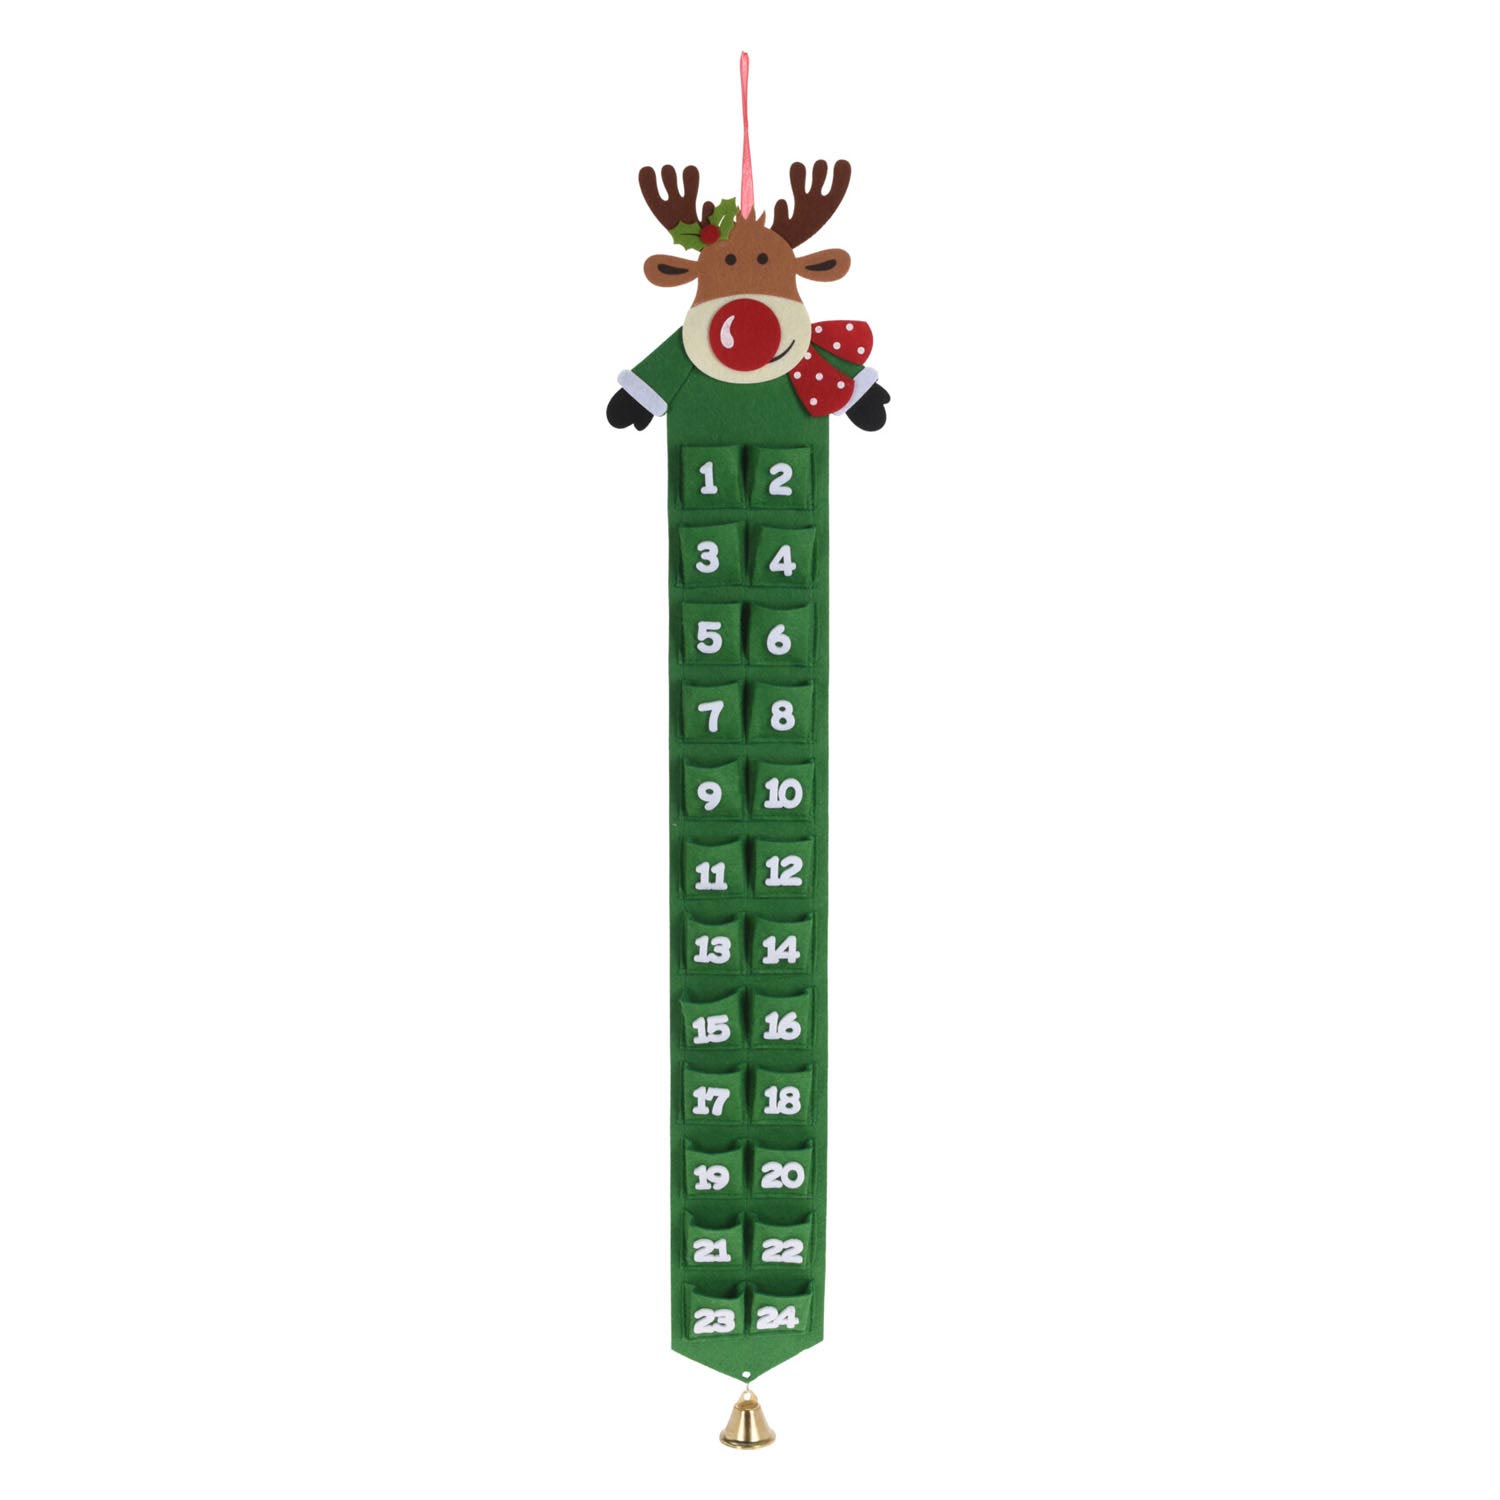 Adventkalender met Kerstfiguur - Groen